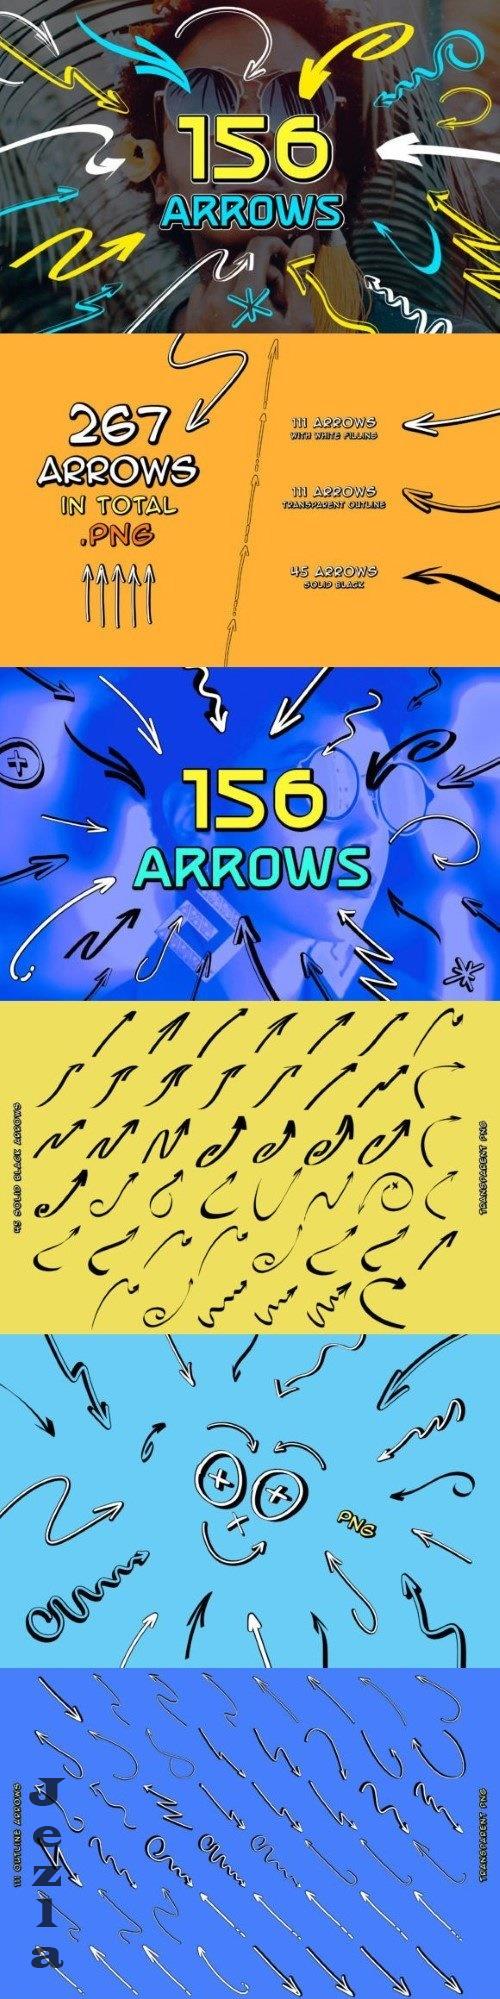 Hand drawn arrows - 31386957